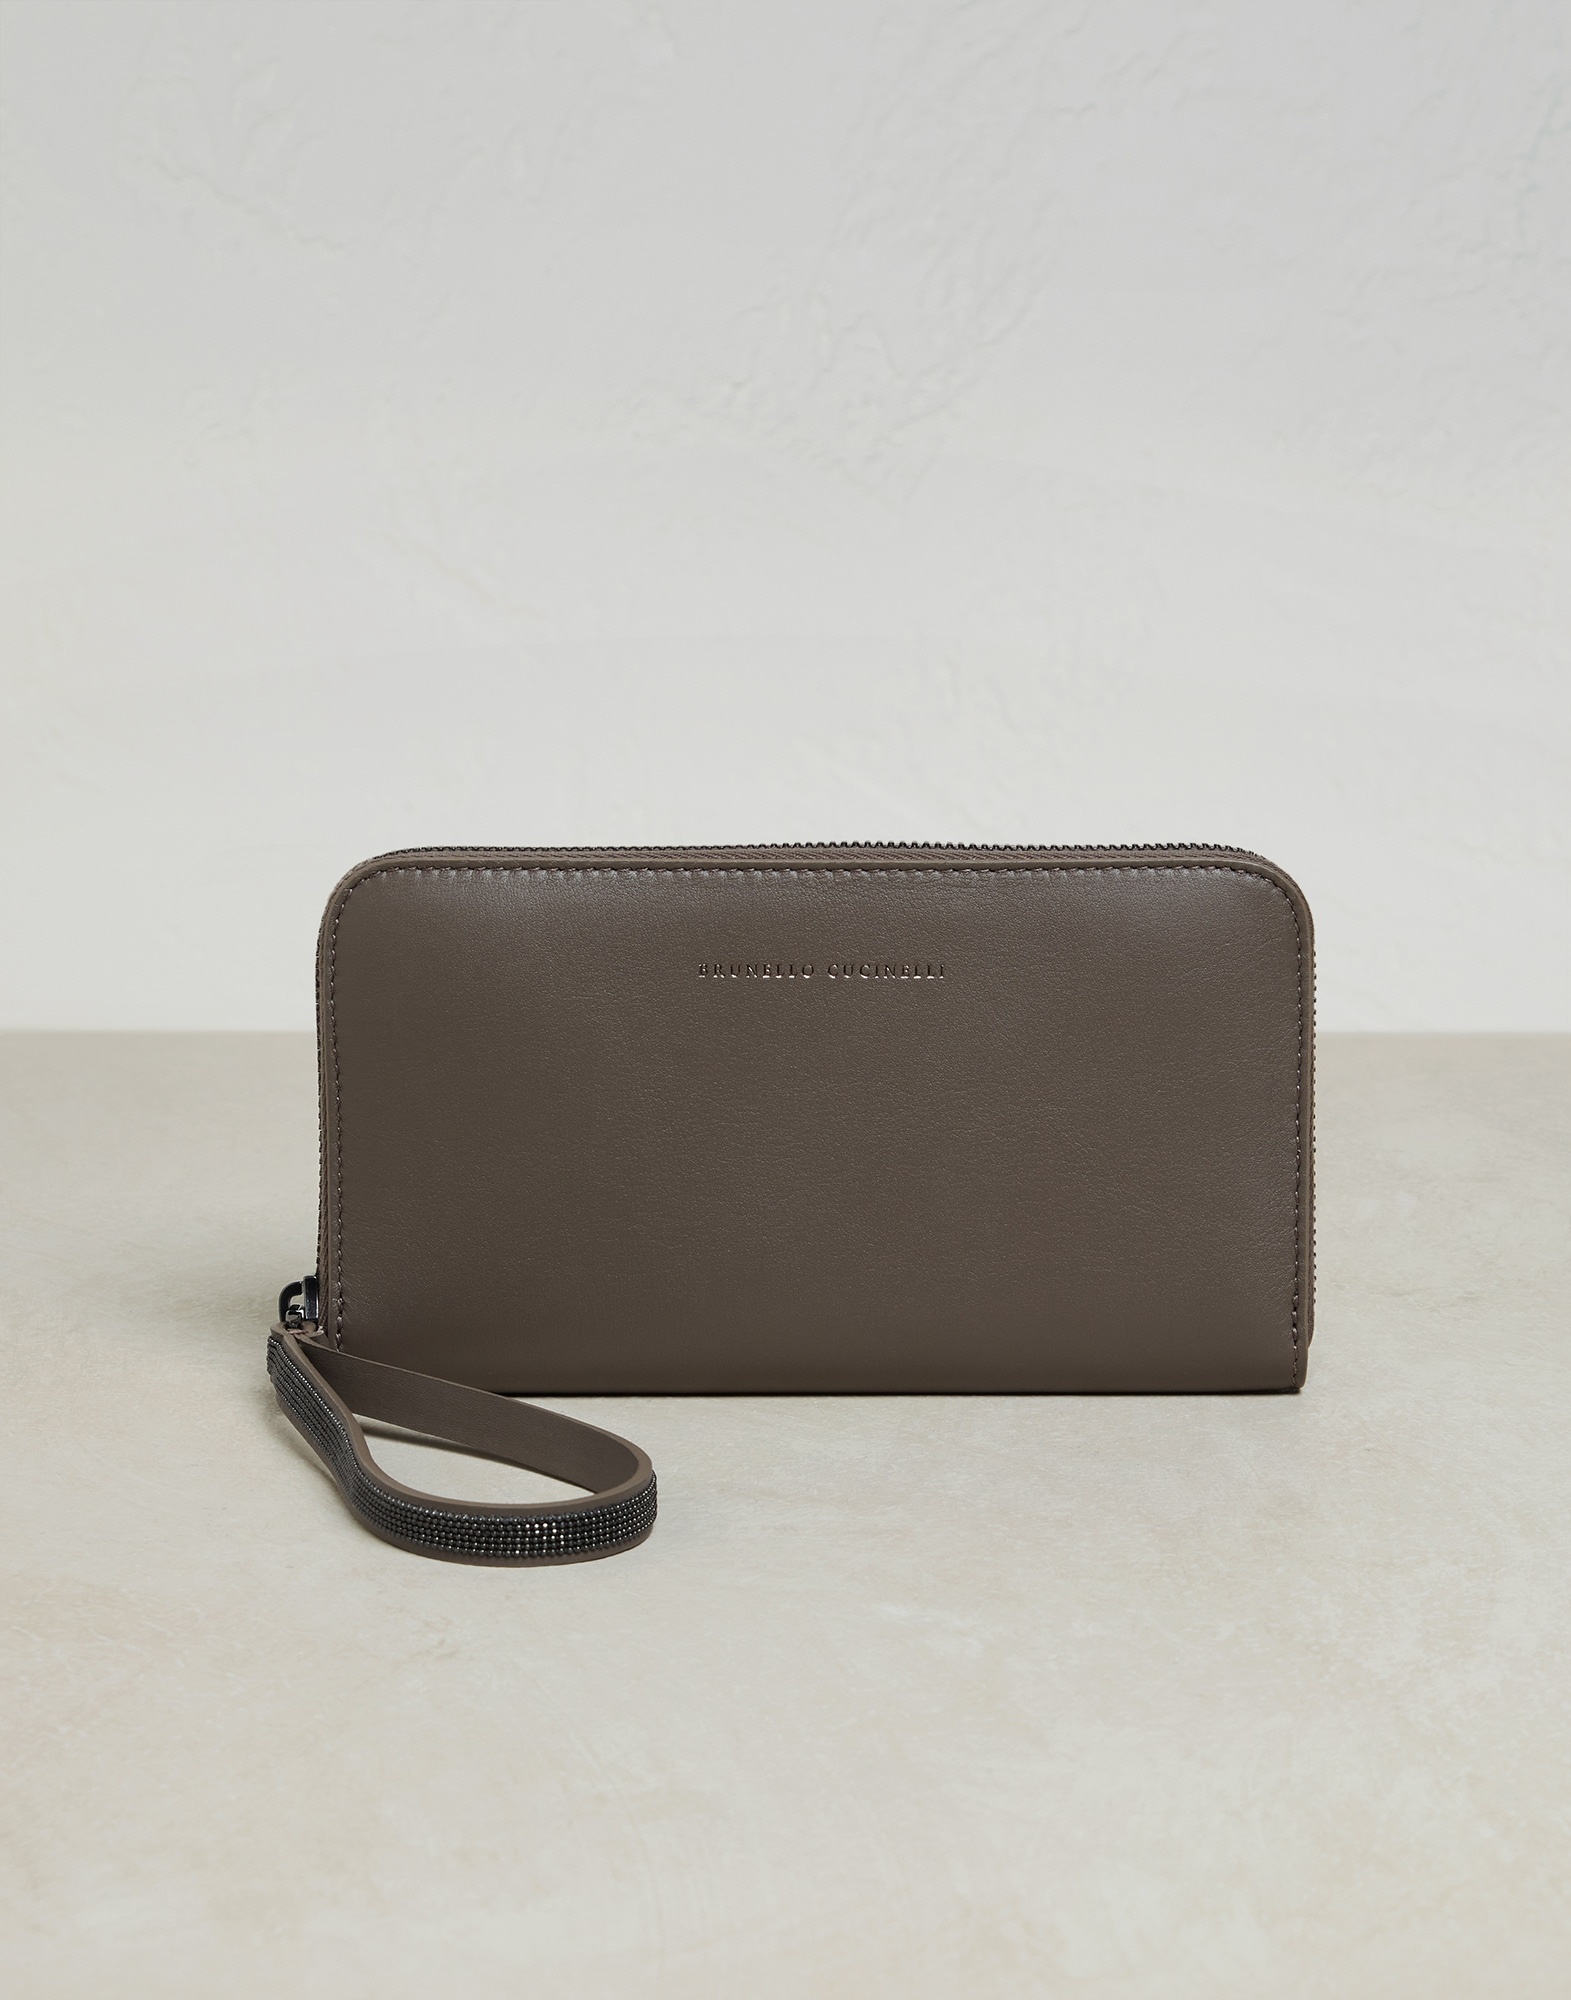 Matte calfskin wallet with precious zipper pull - 1